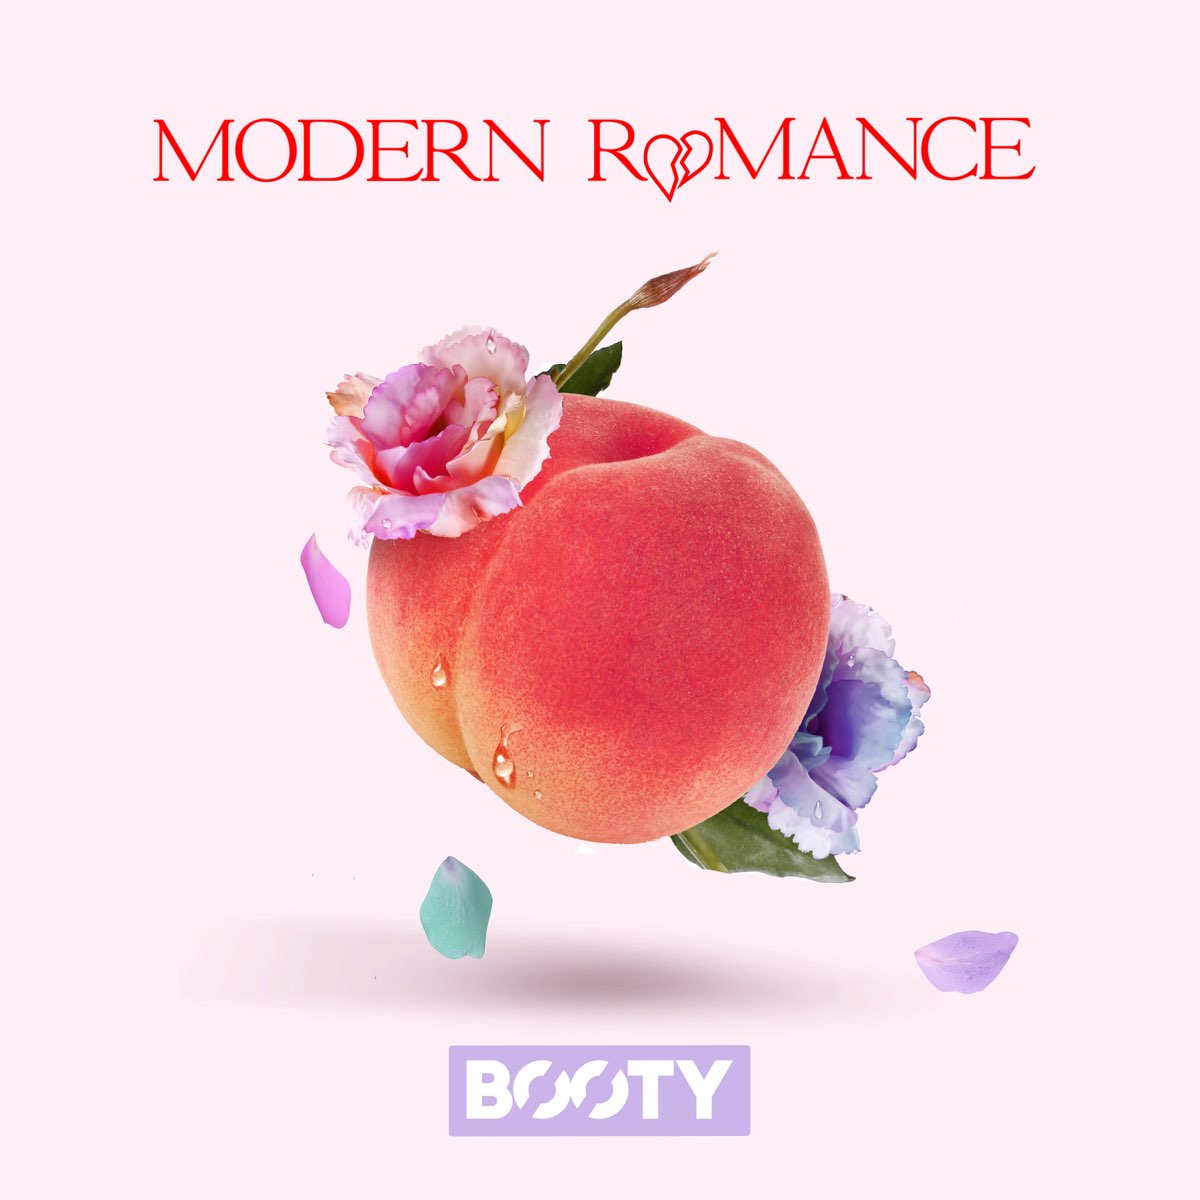 Modern Romance. Modern Romantic Cherry. Romantic Moderns. B romance